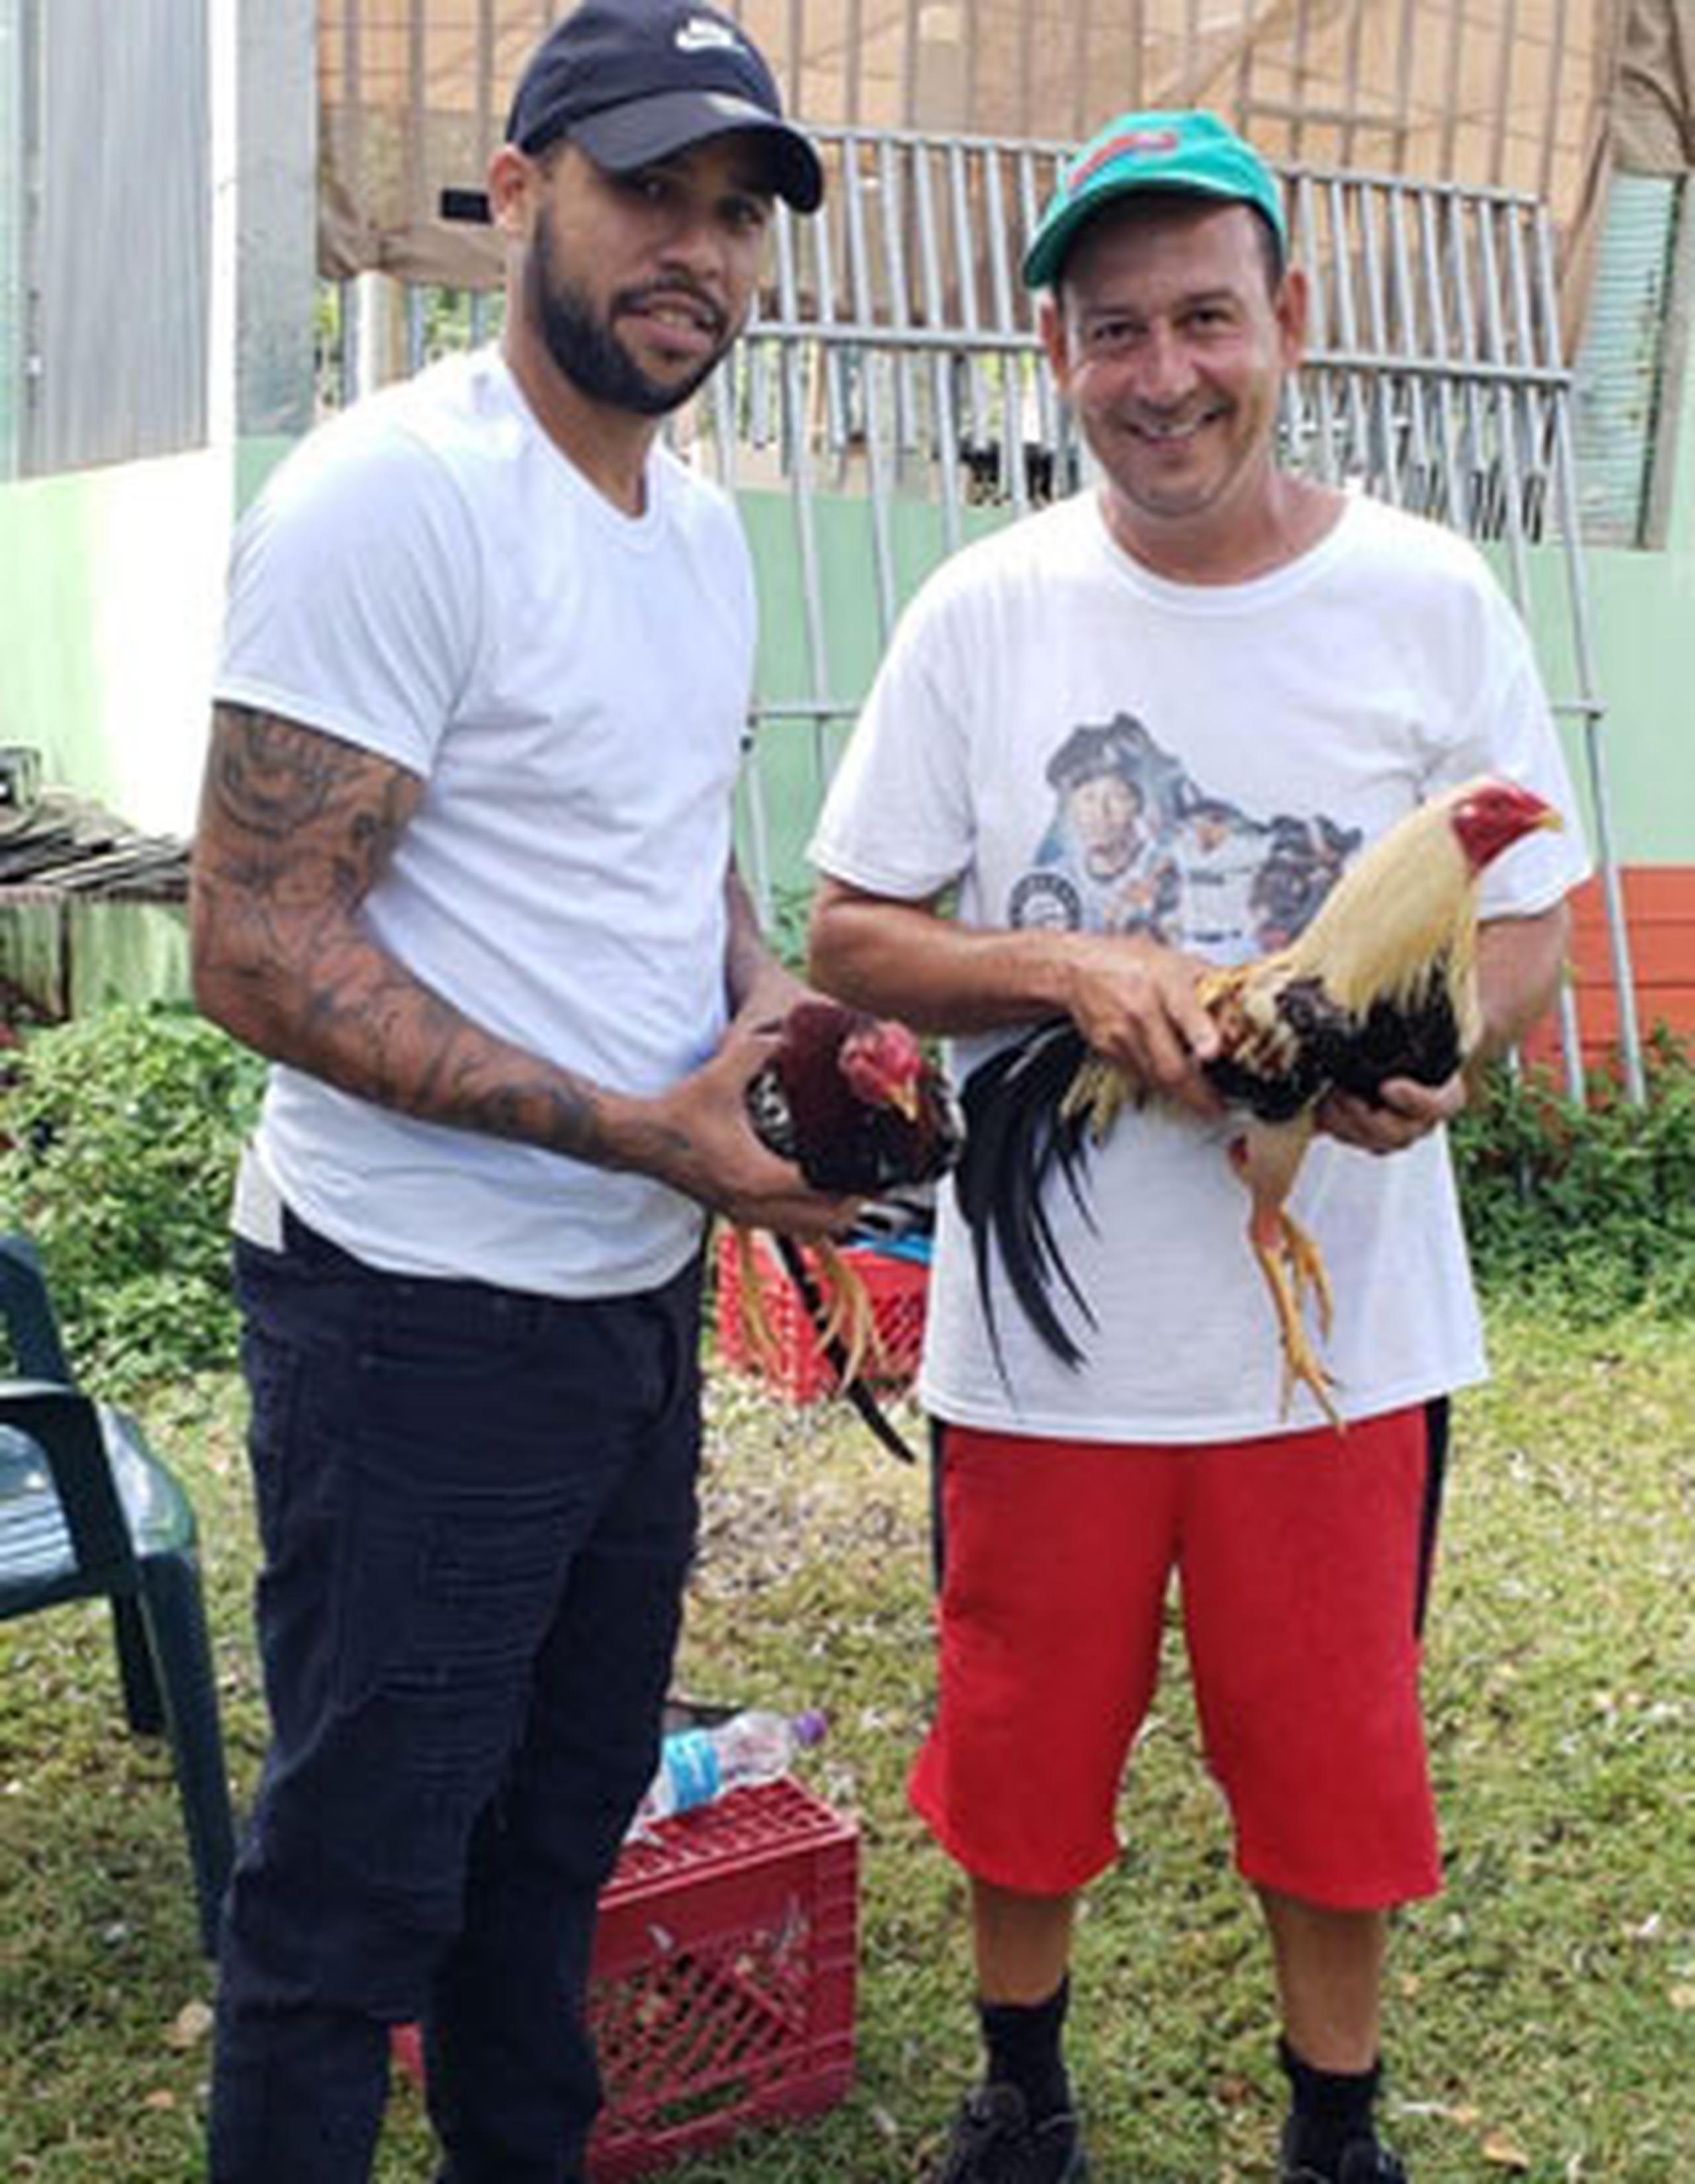 Joel Laboy Burgos y su padre, Toño Laboy Meléndez, lamentan la decisión, pues es un duro golpe su familia, la que se dedica a la crianza de gallos. (Para Primera Hora / Cesiach López Maldonado)